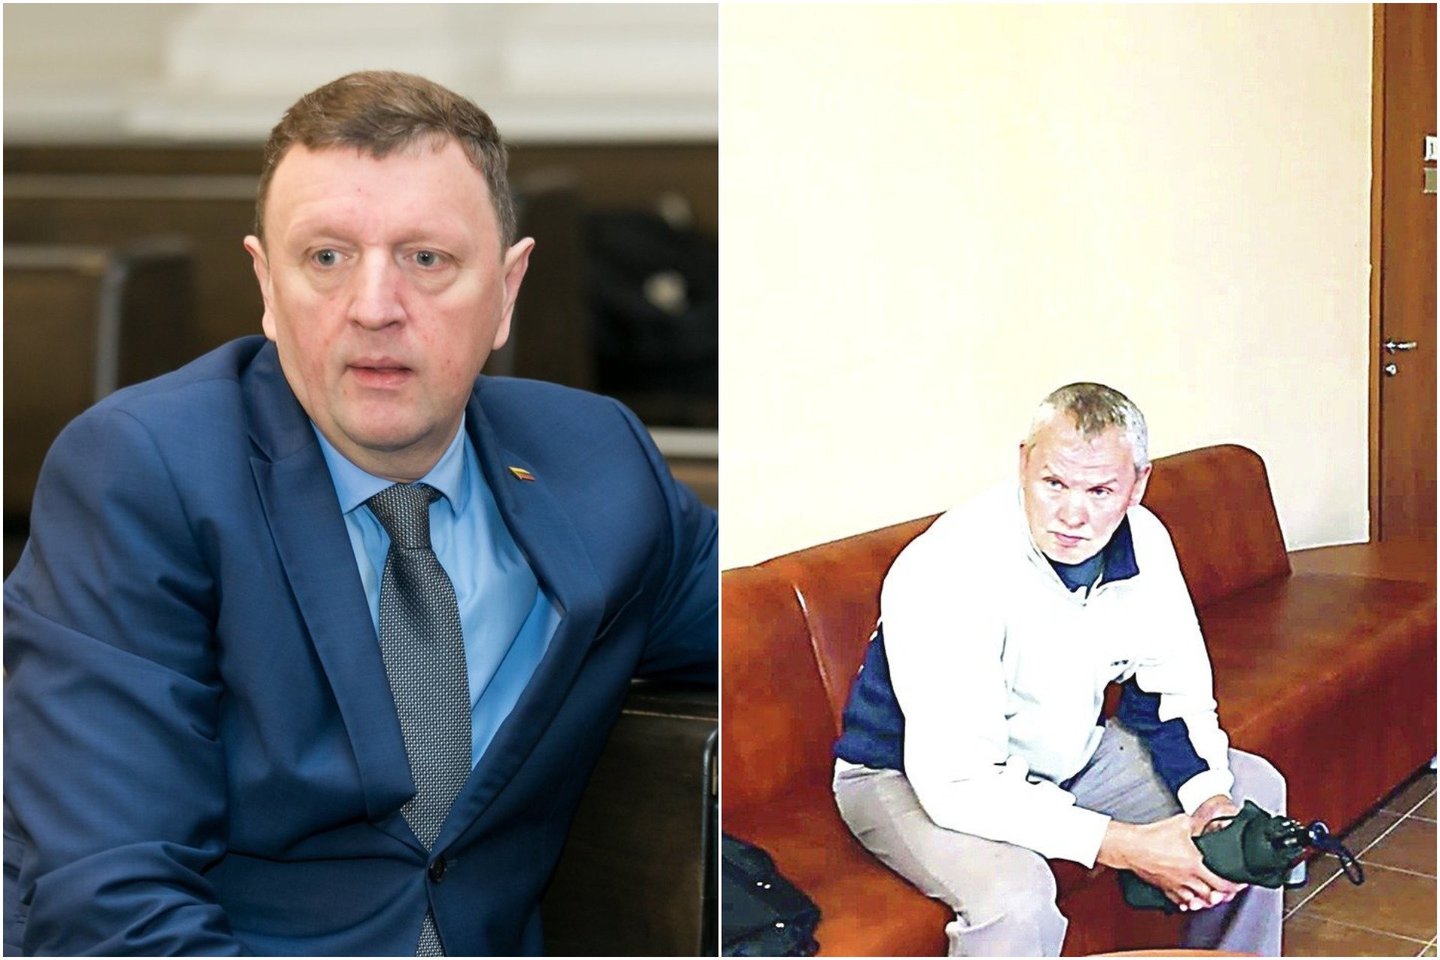 Joniškio meras V.Gailius (kairėje) šio rajono teisme teigė buvęs sukrėstas, kai svetimame telefone perskaitė J.Kybarto žinutę apie save.